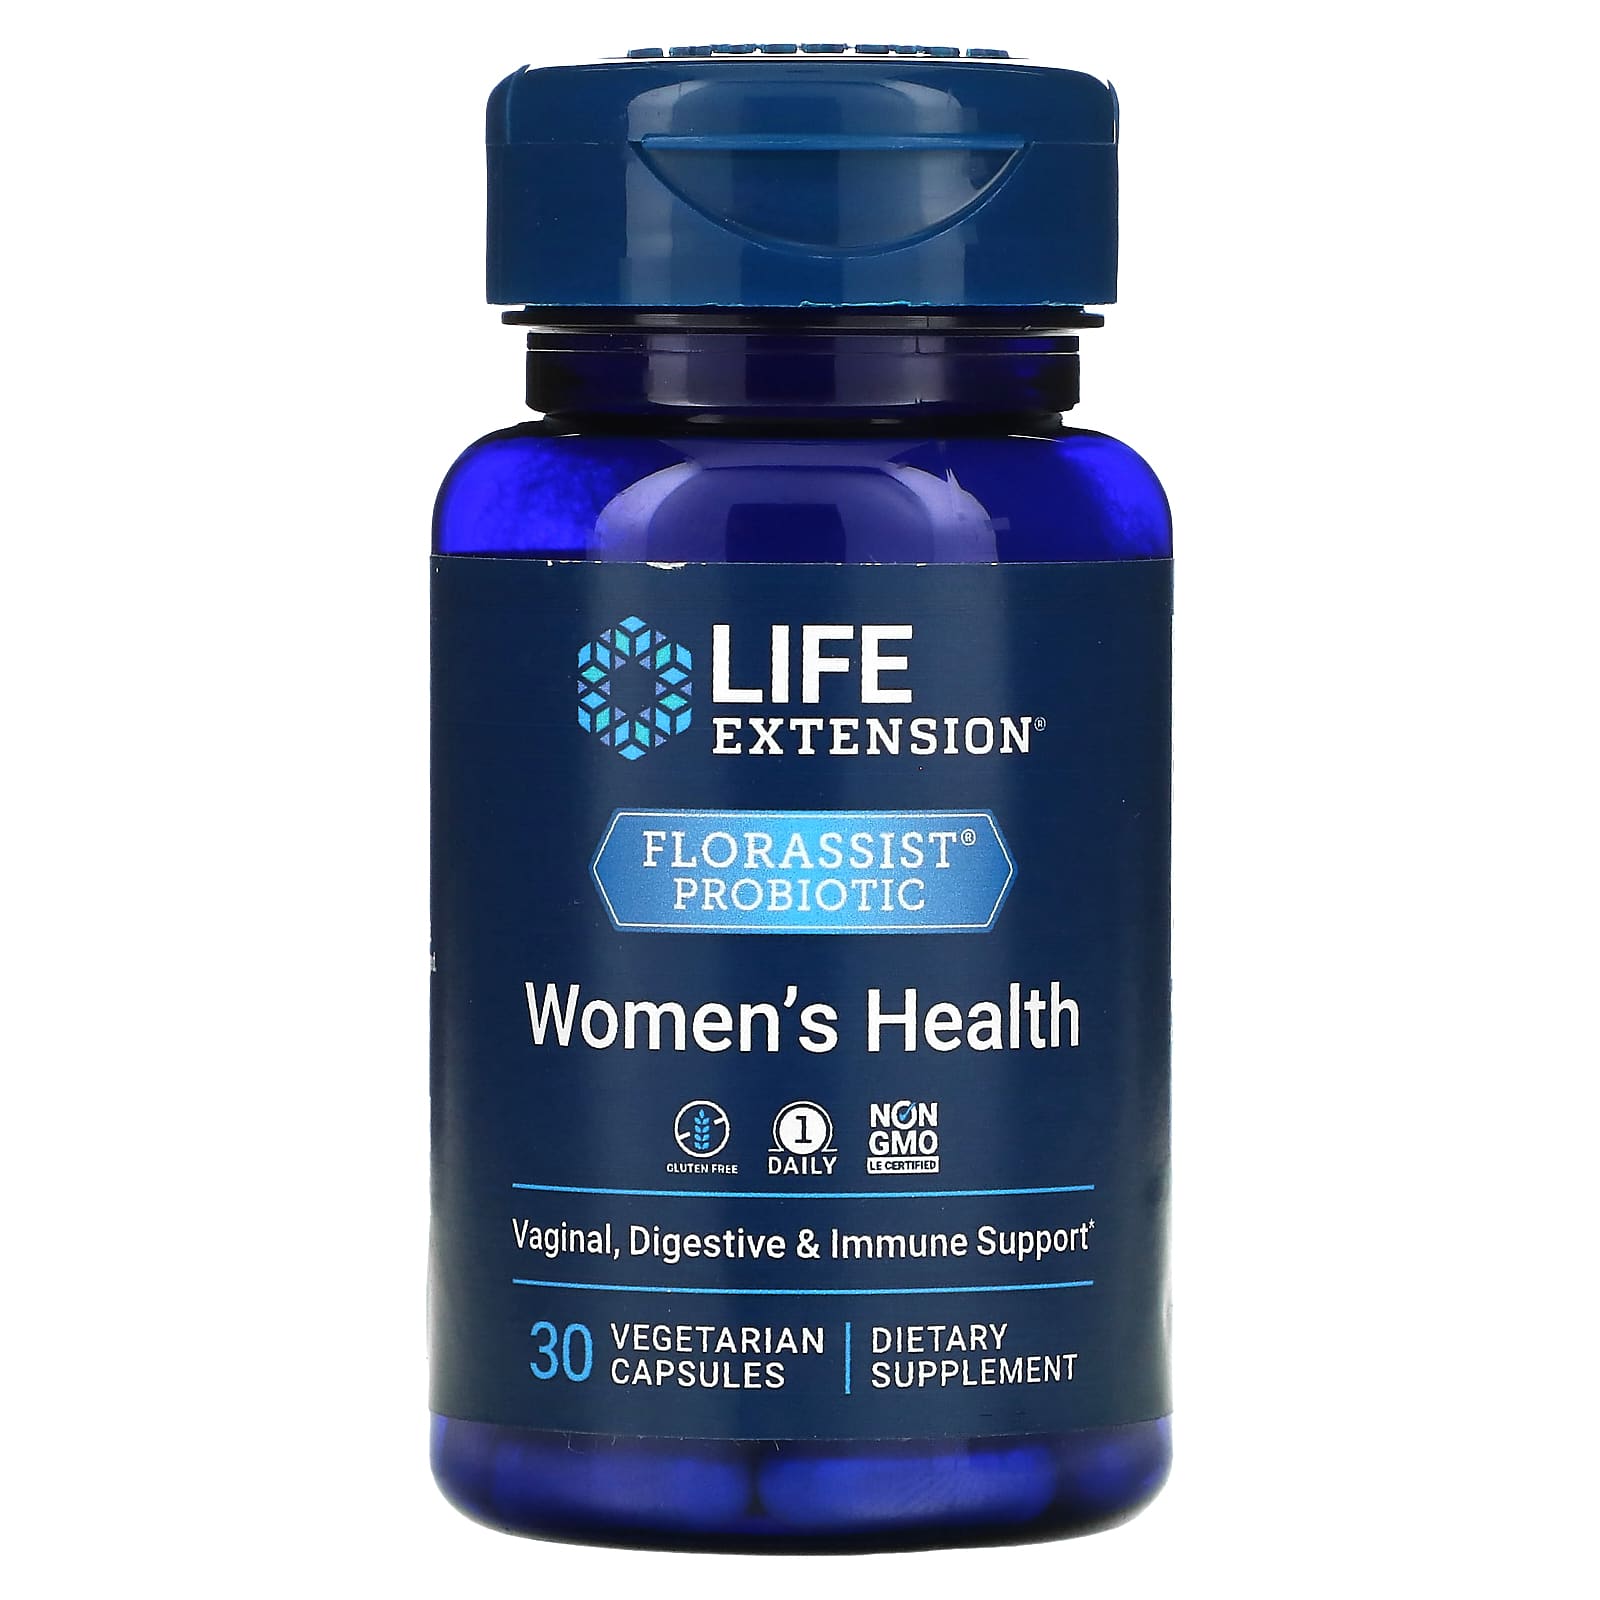 Пробиотик Life Extension для здоровья женщин, 30 вегетарианских капсул life extension florassist пробиотик для здоровья женщин 30 вегетарианских капсул